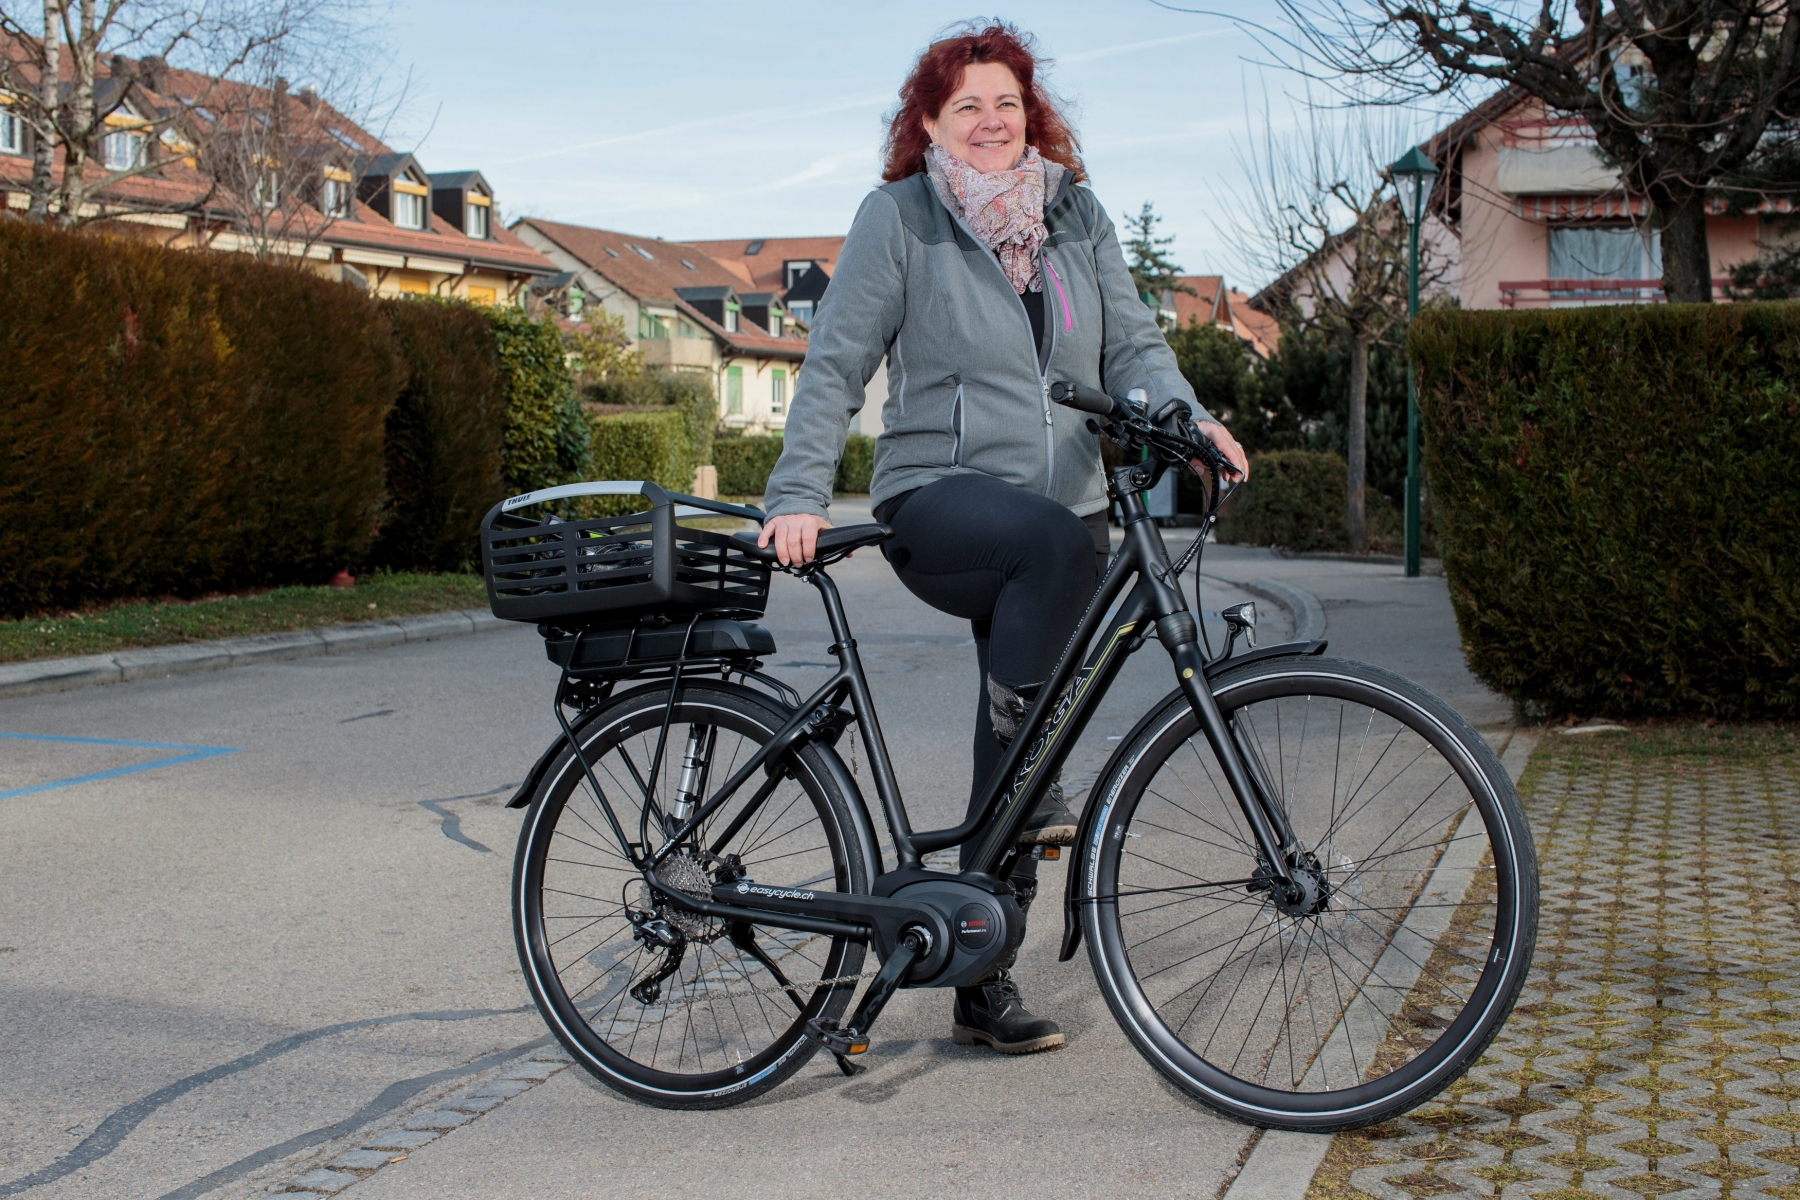 Gland, mercredi 22 février 2017
Portrait de Christine Nussbaum, habitante de Gland, qui a récemment acheté un vélo électrique grâce aux subventions proposées par la Ville de Gland

Sigfredo Haro Portrait Christine Nussbaum, Gland